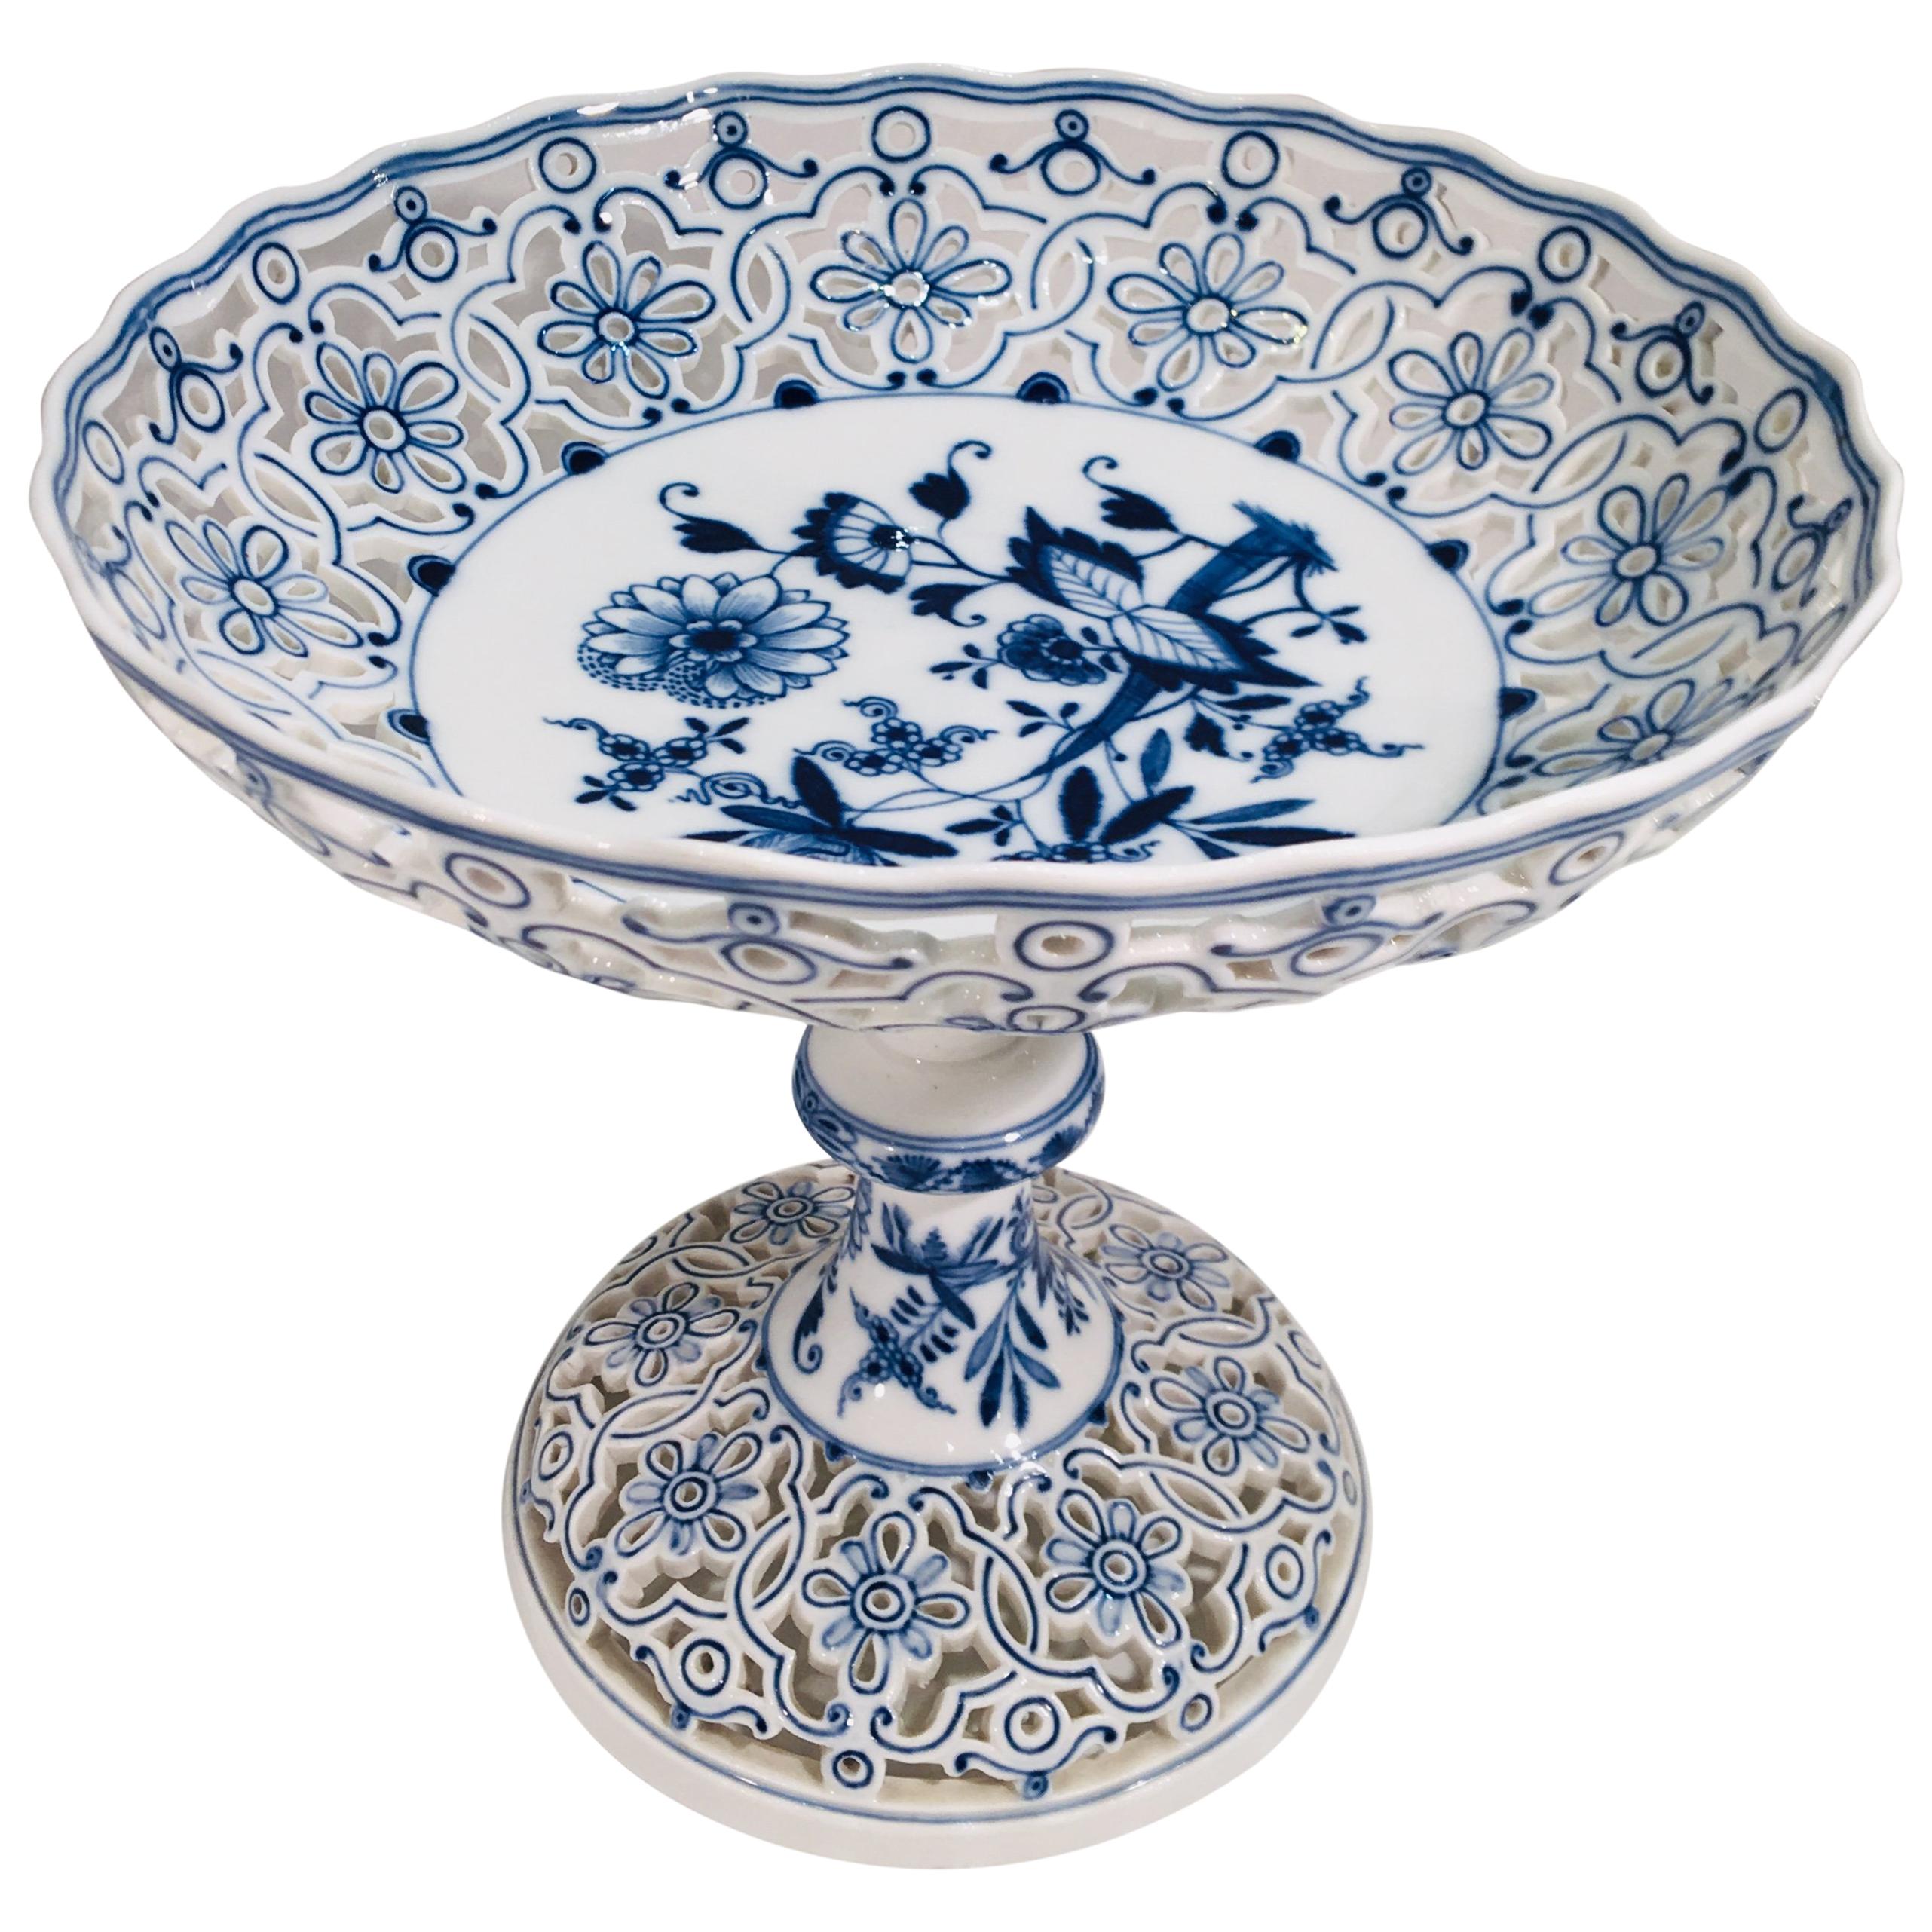 Fine Antique circa 1815 Meissen Porcelain Blue Onion Pattern Pierced Compote